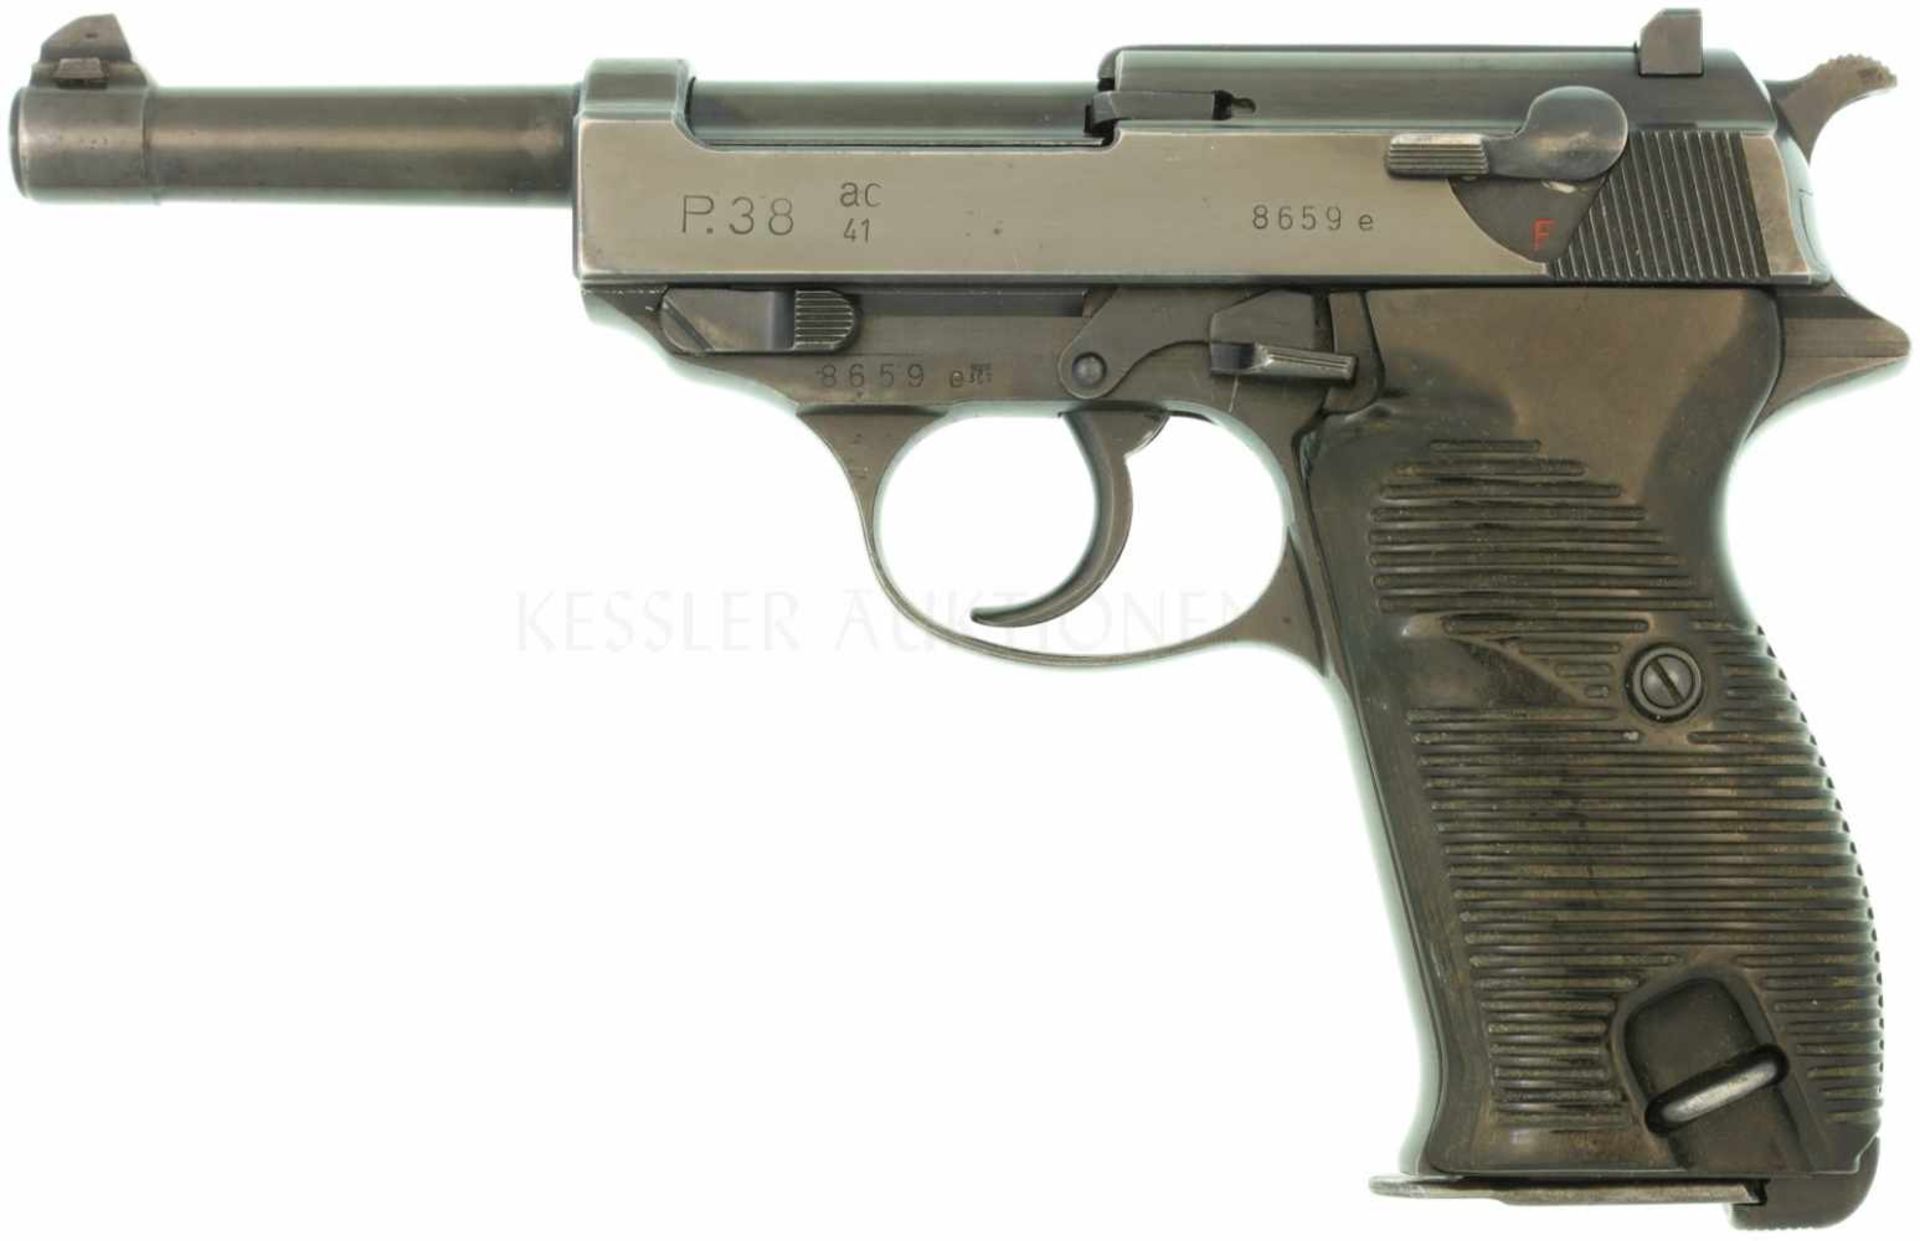 Pistole Walther P38 ac41, Kal. 9mmPara Hochglanzbrünierte Ganzstahlwaffe mit Spannabzug. Der